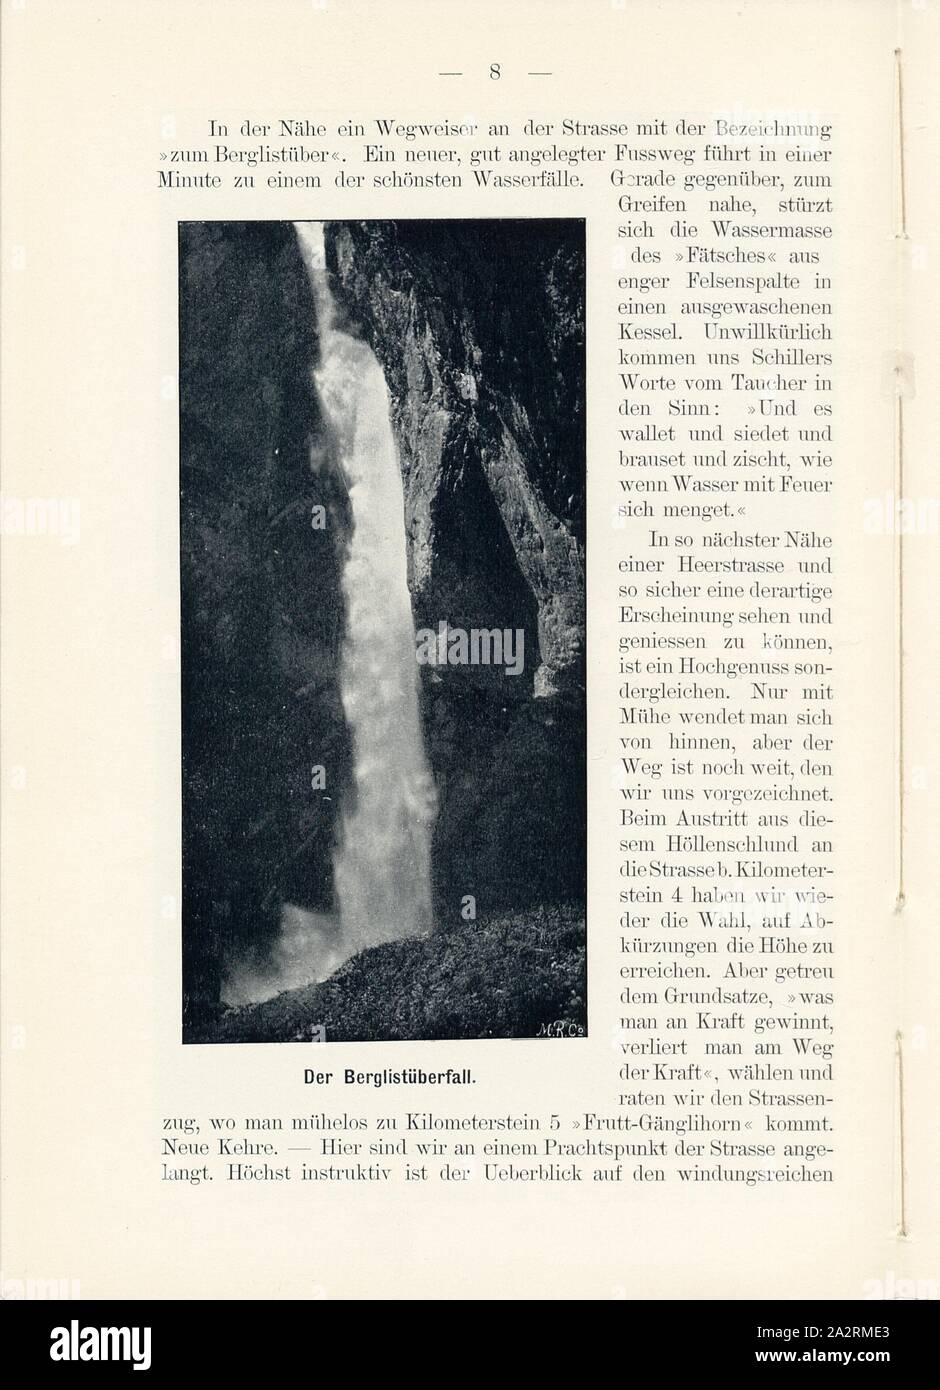 Berg List Uber Fall, Waterfall in Linthal (Canton of Glarus), Signed: M.R.C, Fig. 7, p. 8, Meisenbach, Riffarth und Co. (imp.), 1900, J. Knobel: Illustrierter Reisebegleiter für die Alpenstrasse des Klausen und ihre Zufahrtslinien. Glarus: Buchdruckerei J. Spälti, 1900 Stock Photo